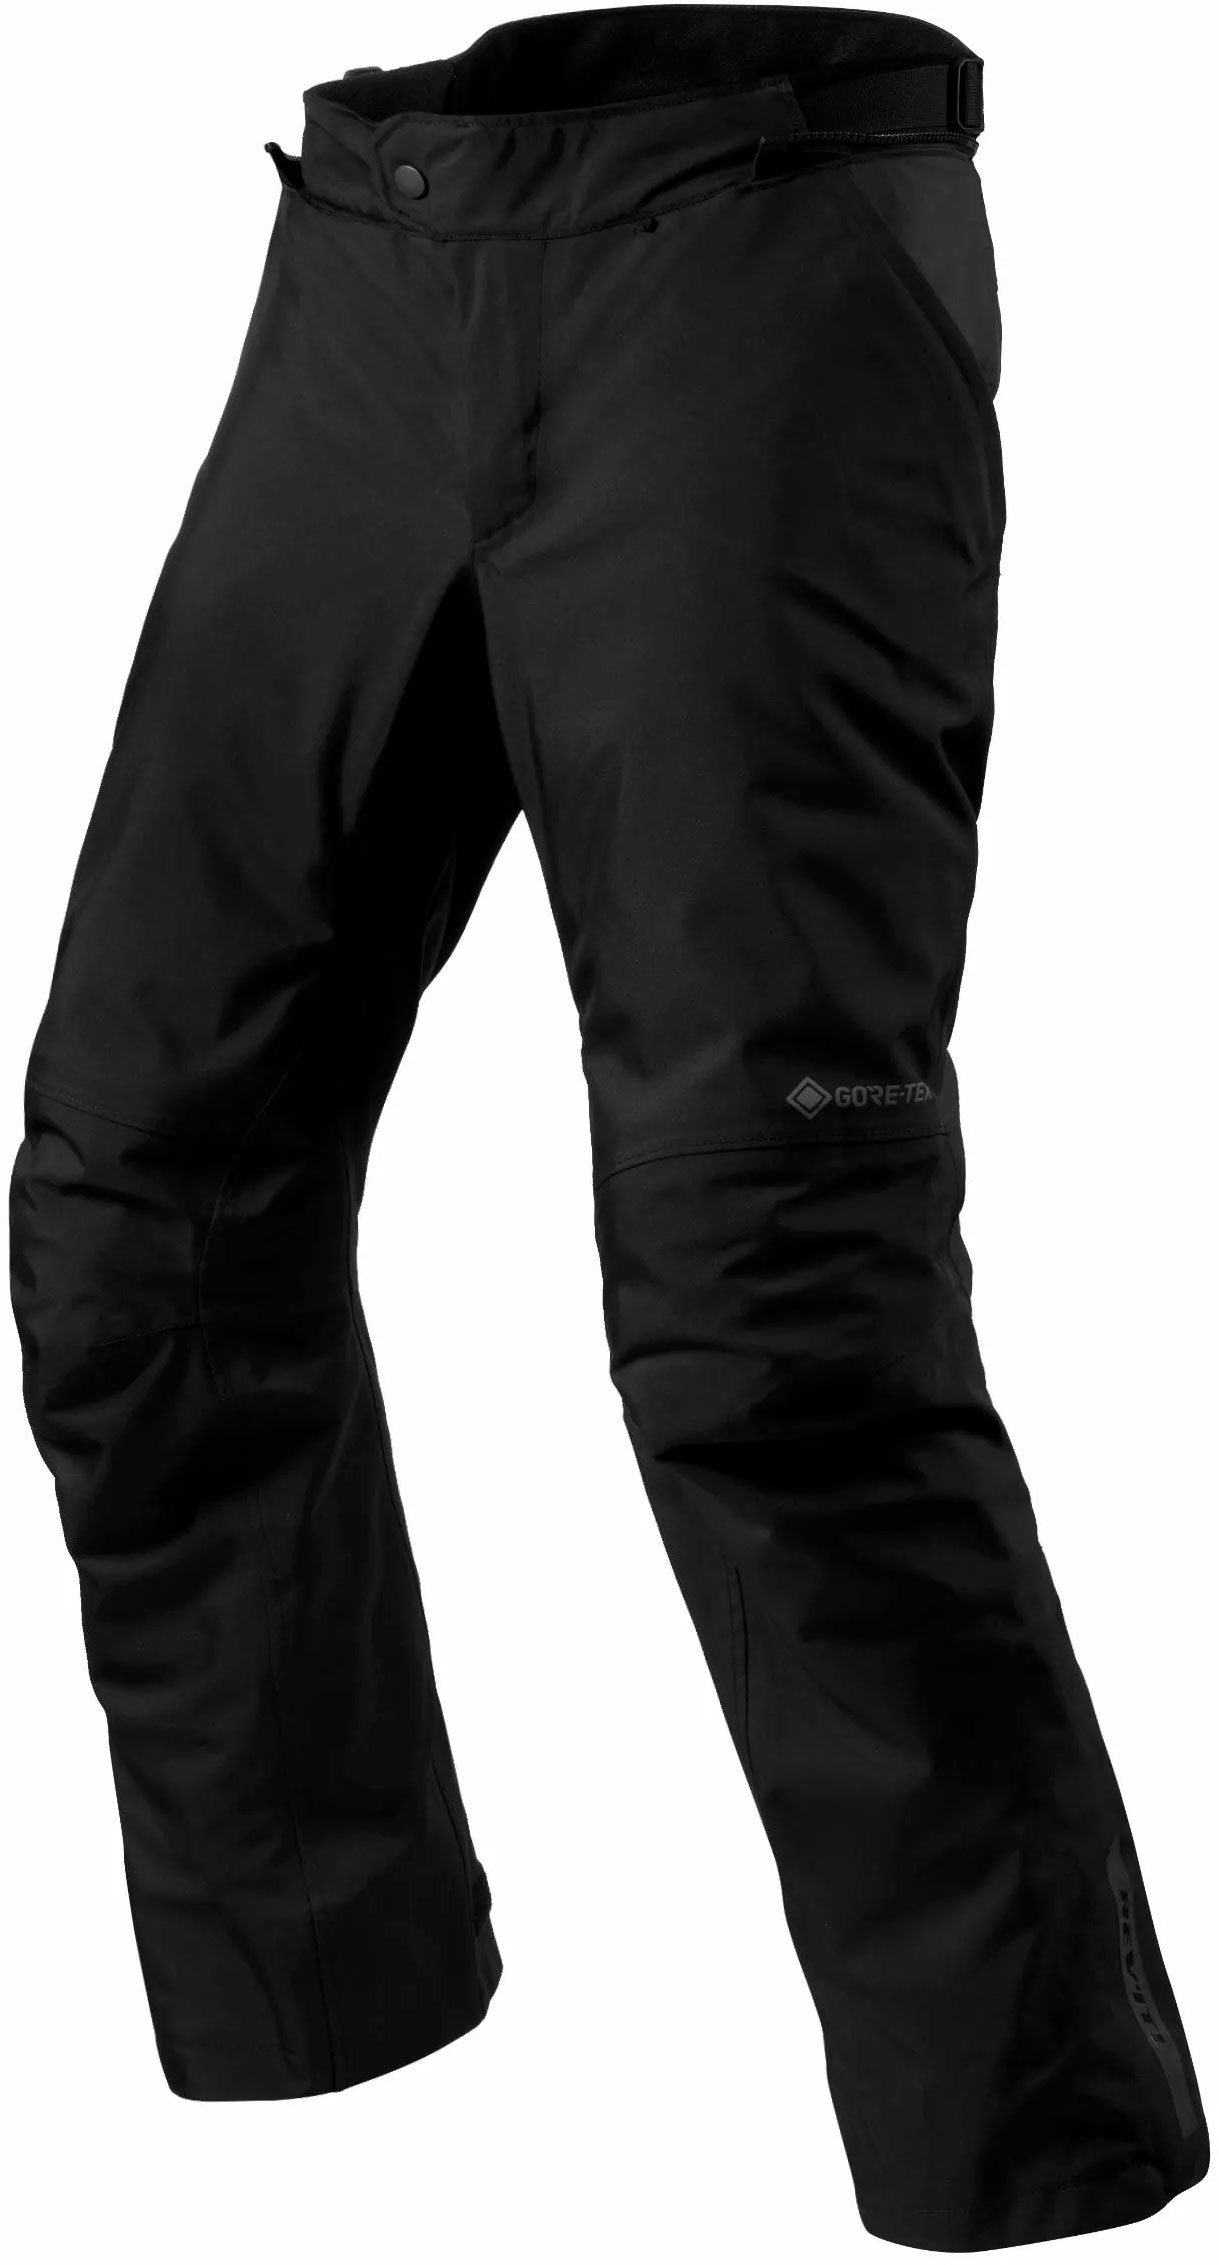 Revit Vertical GTX, pantalon textile imperméable - Noir - L